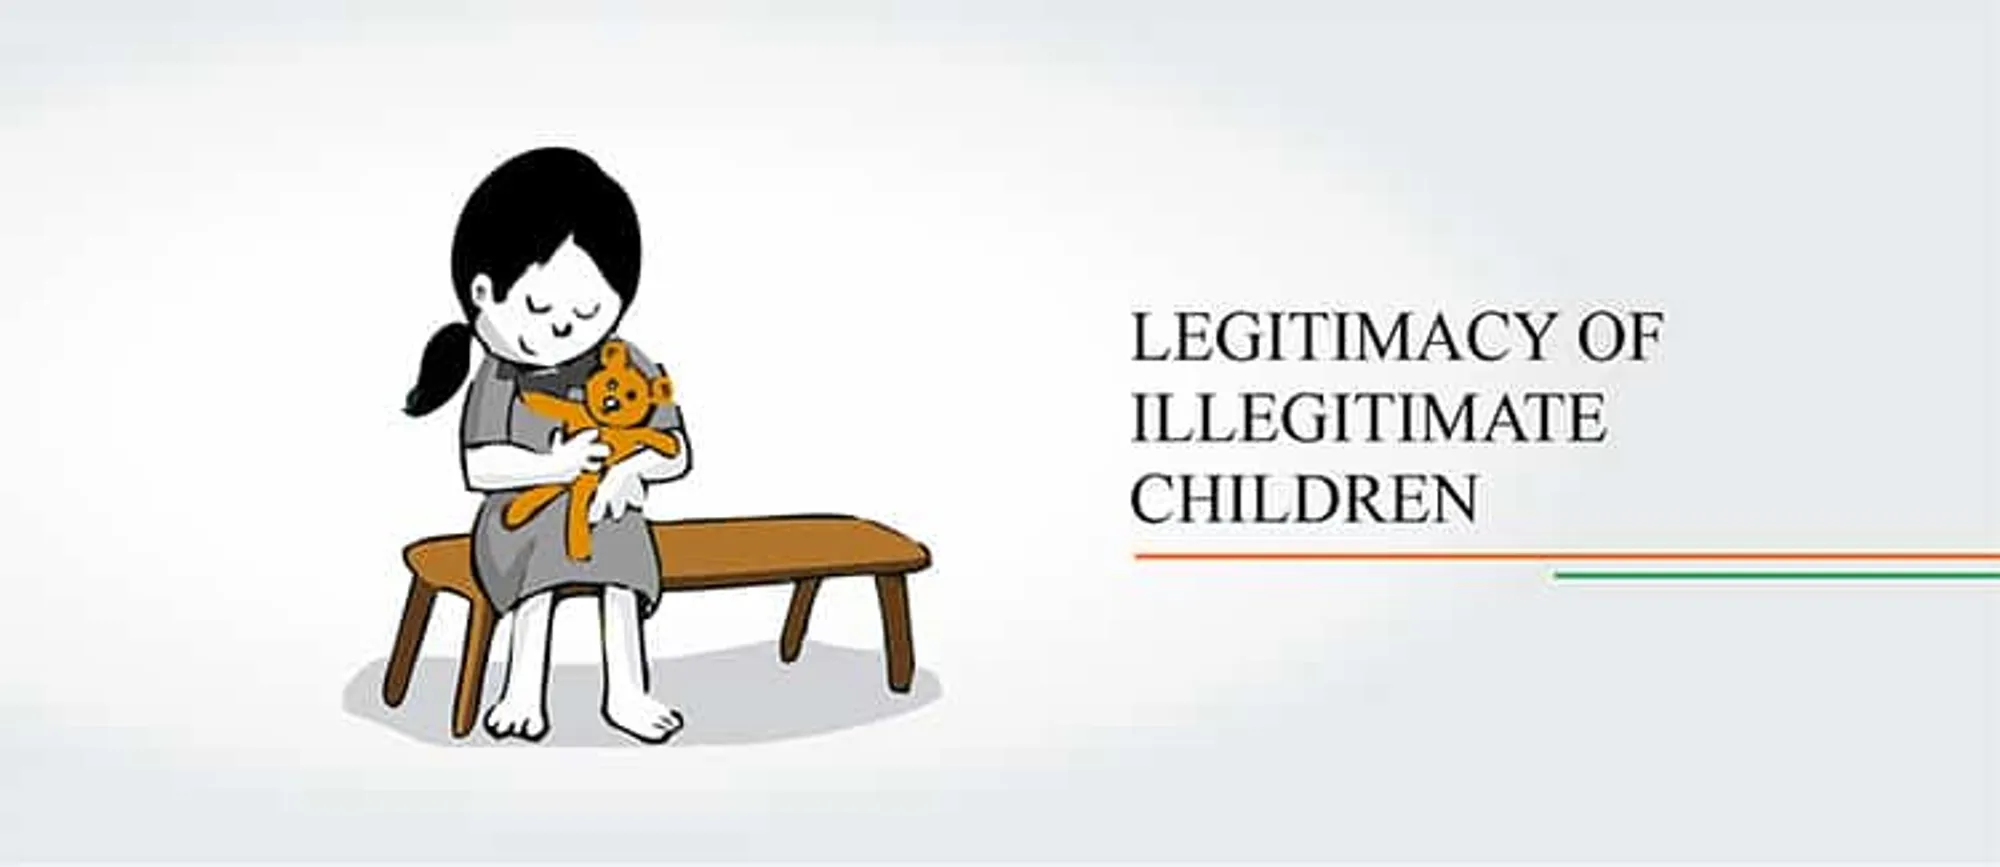 Legitimacy illegitimate children